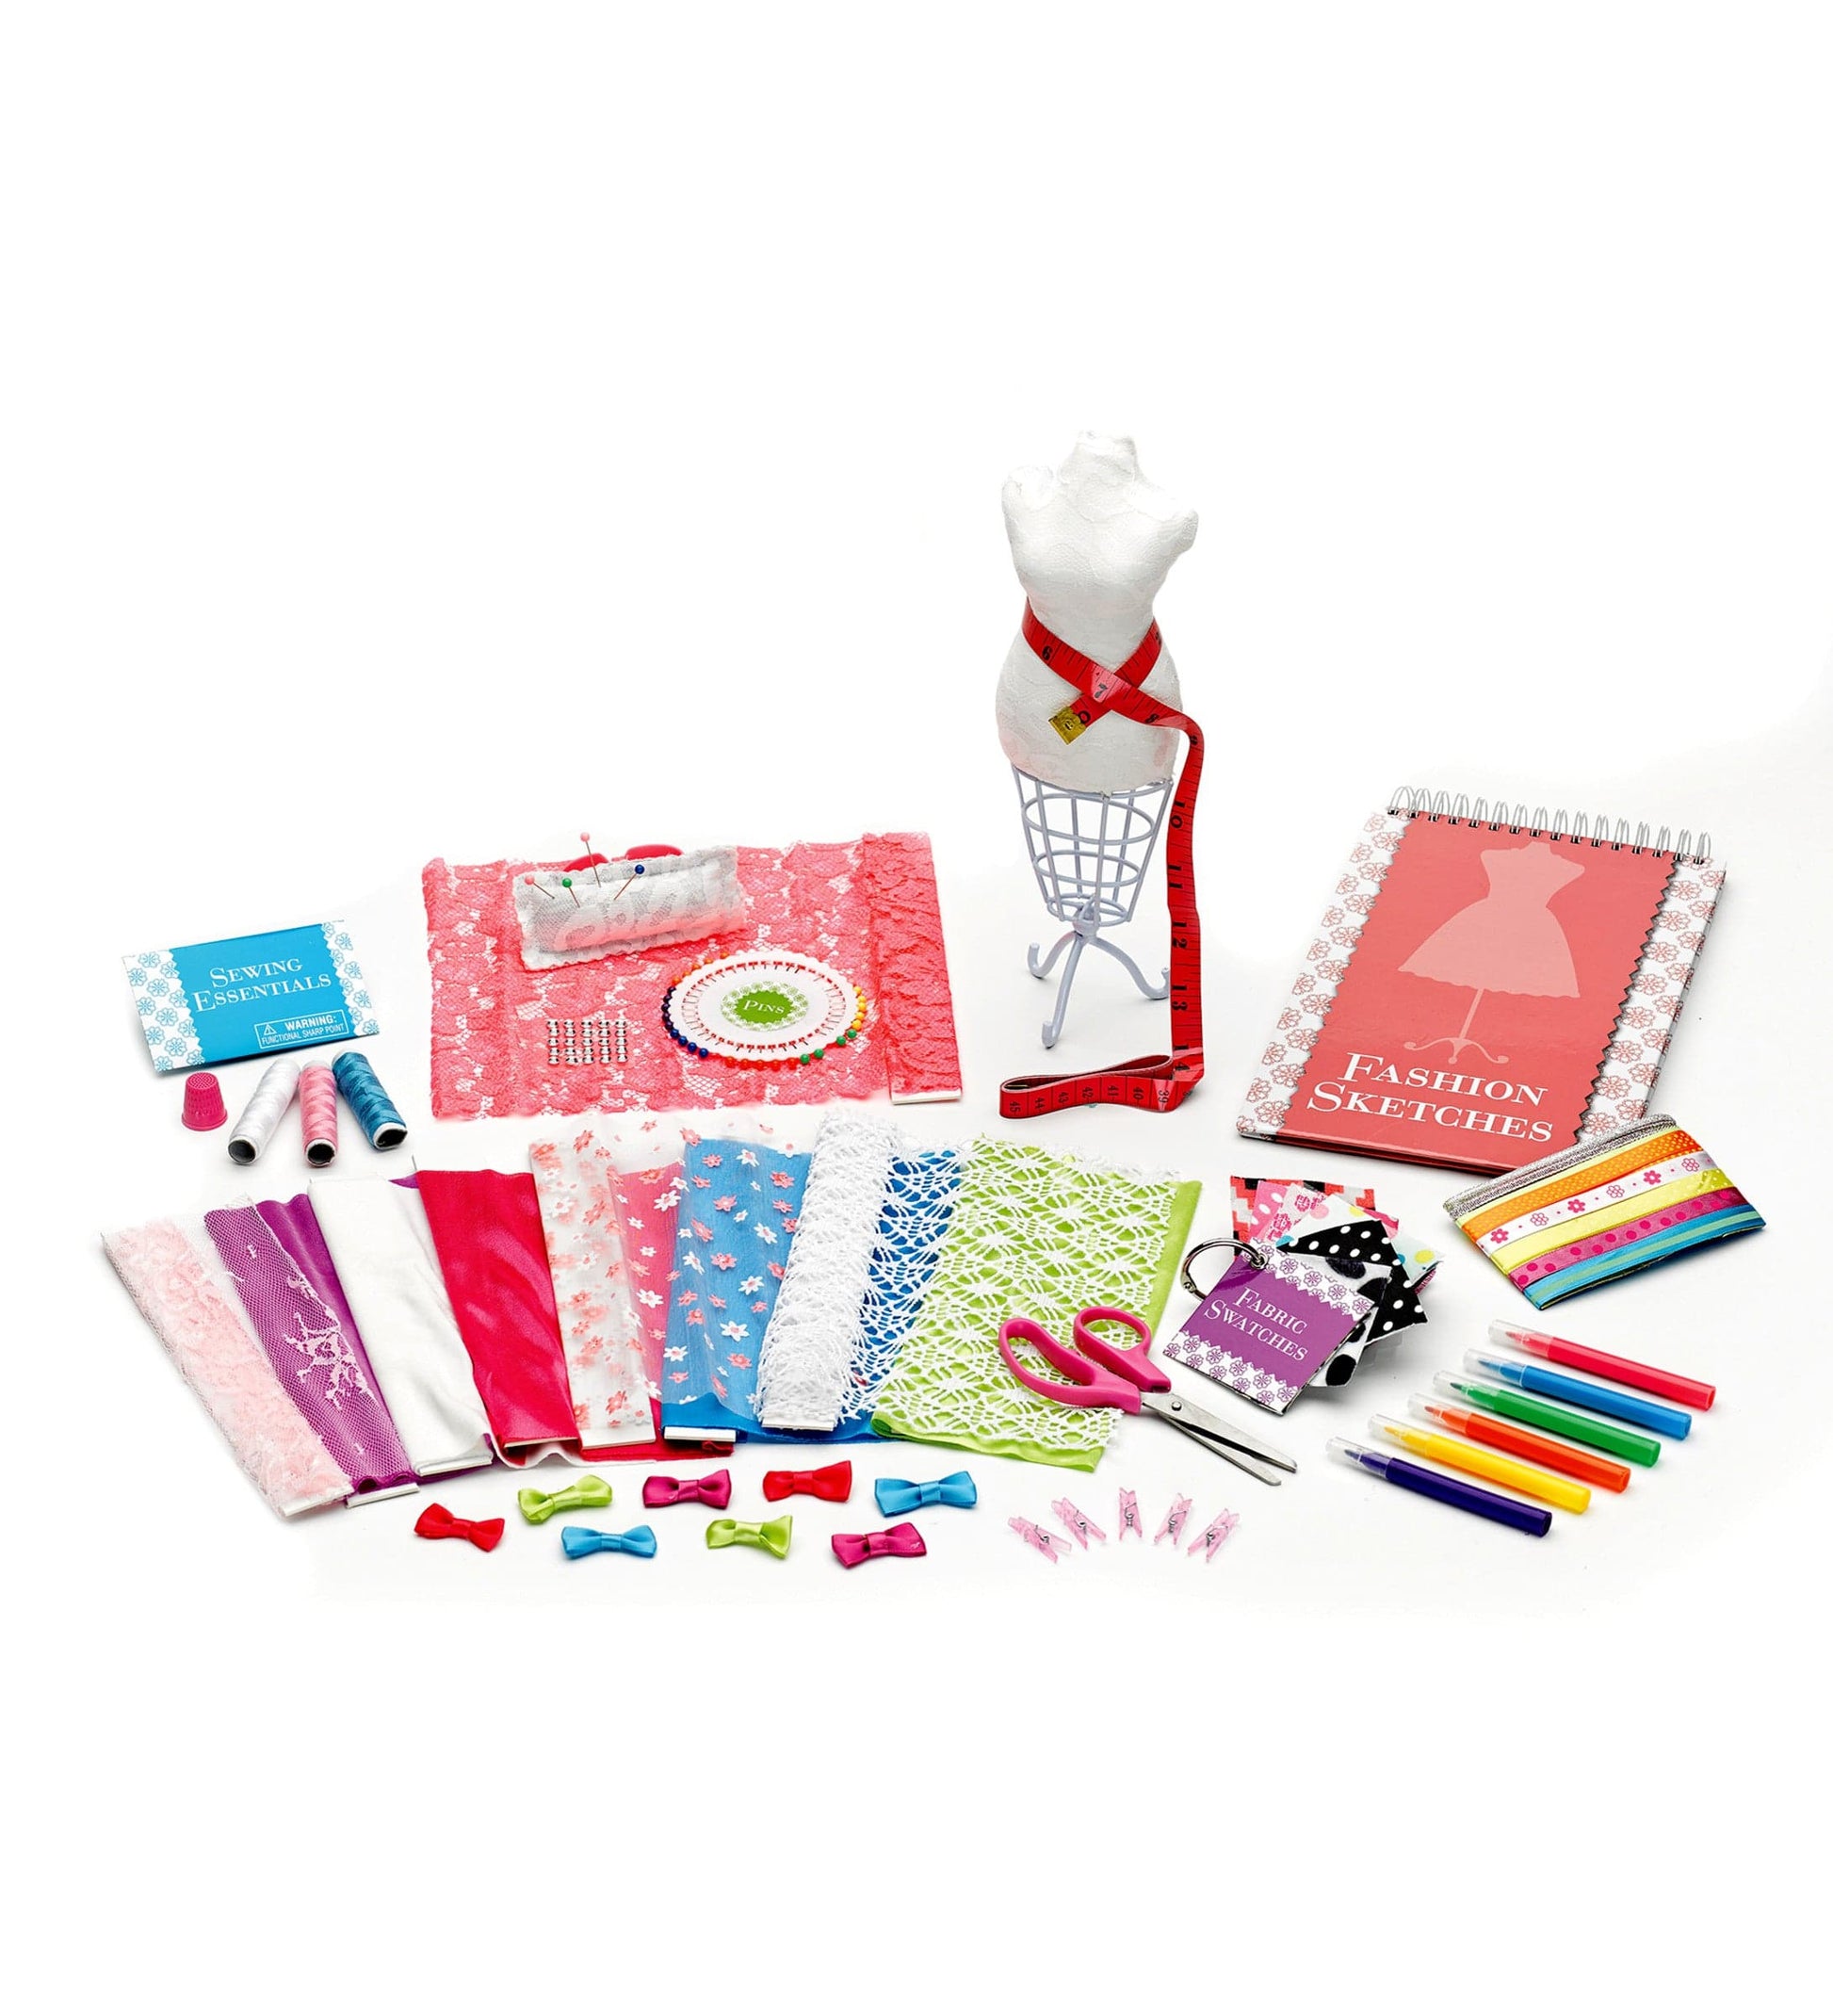 VOLINFO Fashion Design Kit for Girls, Sewing Kit for Kids, DIY Arts & Crafts  Kit for